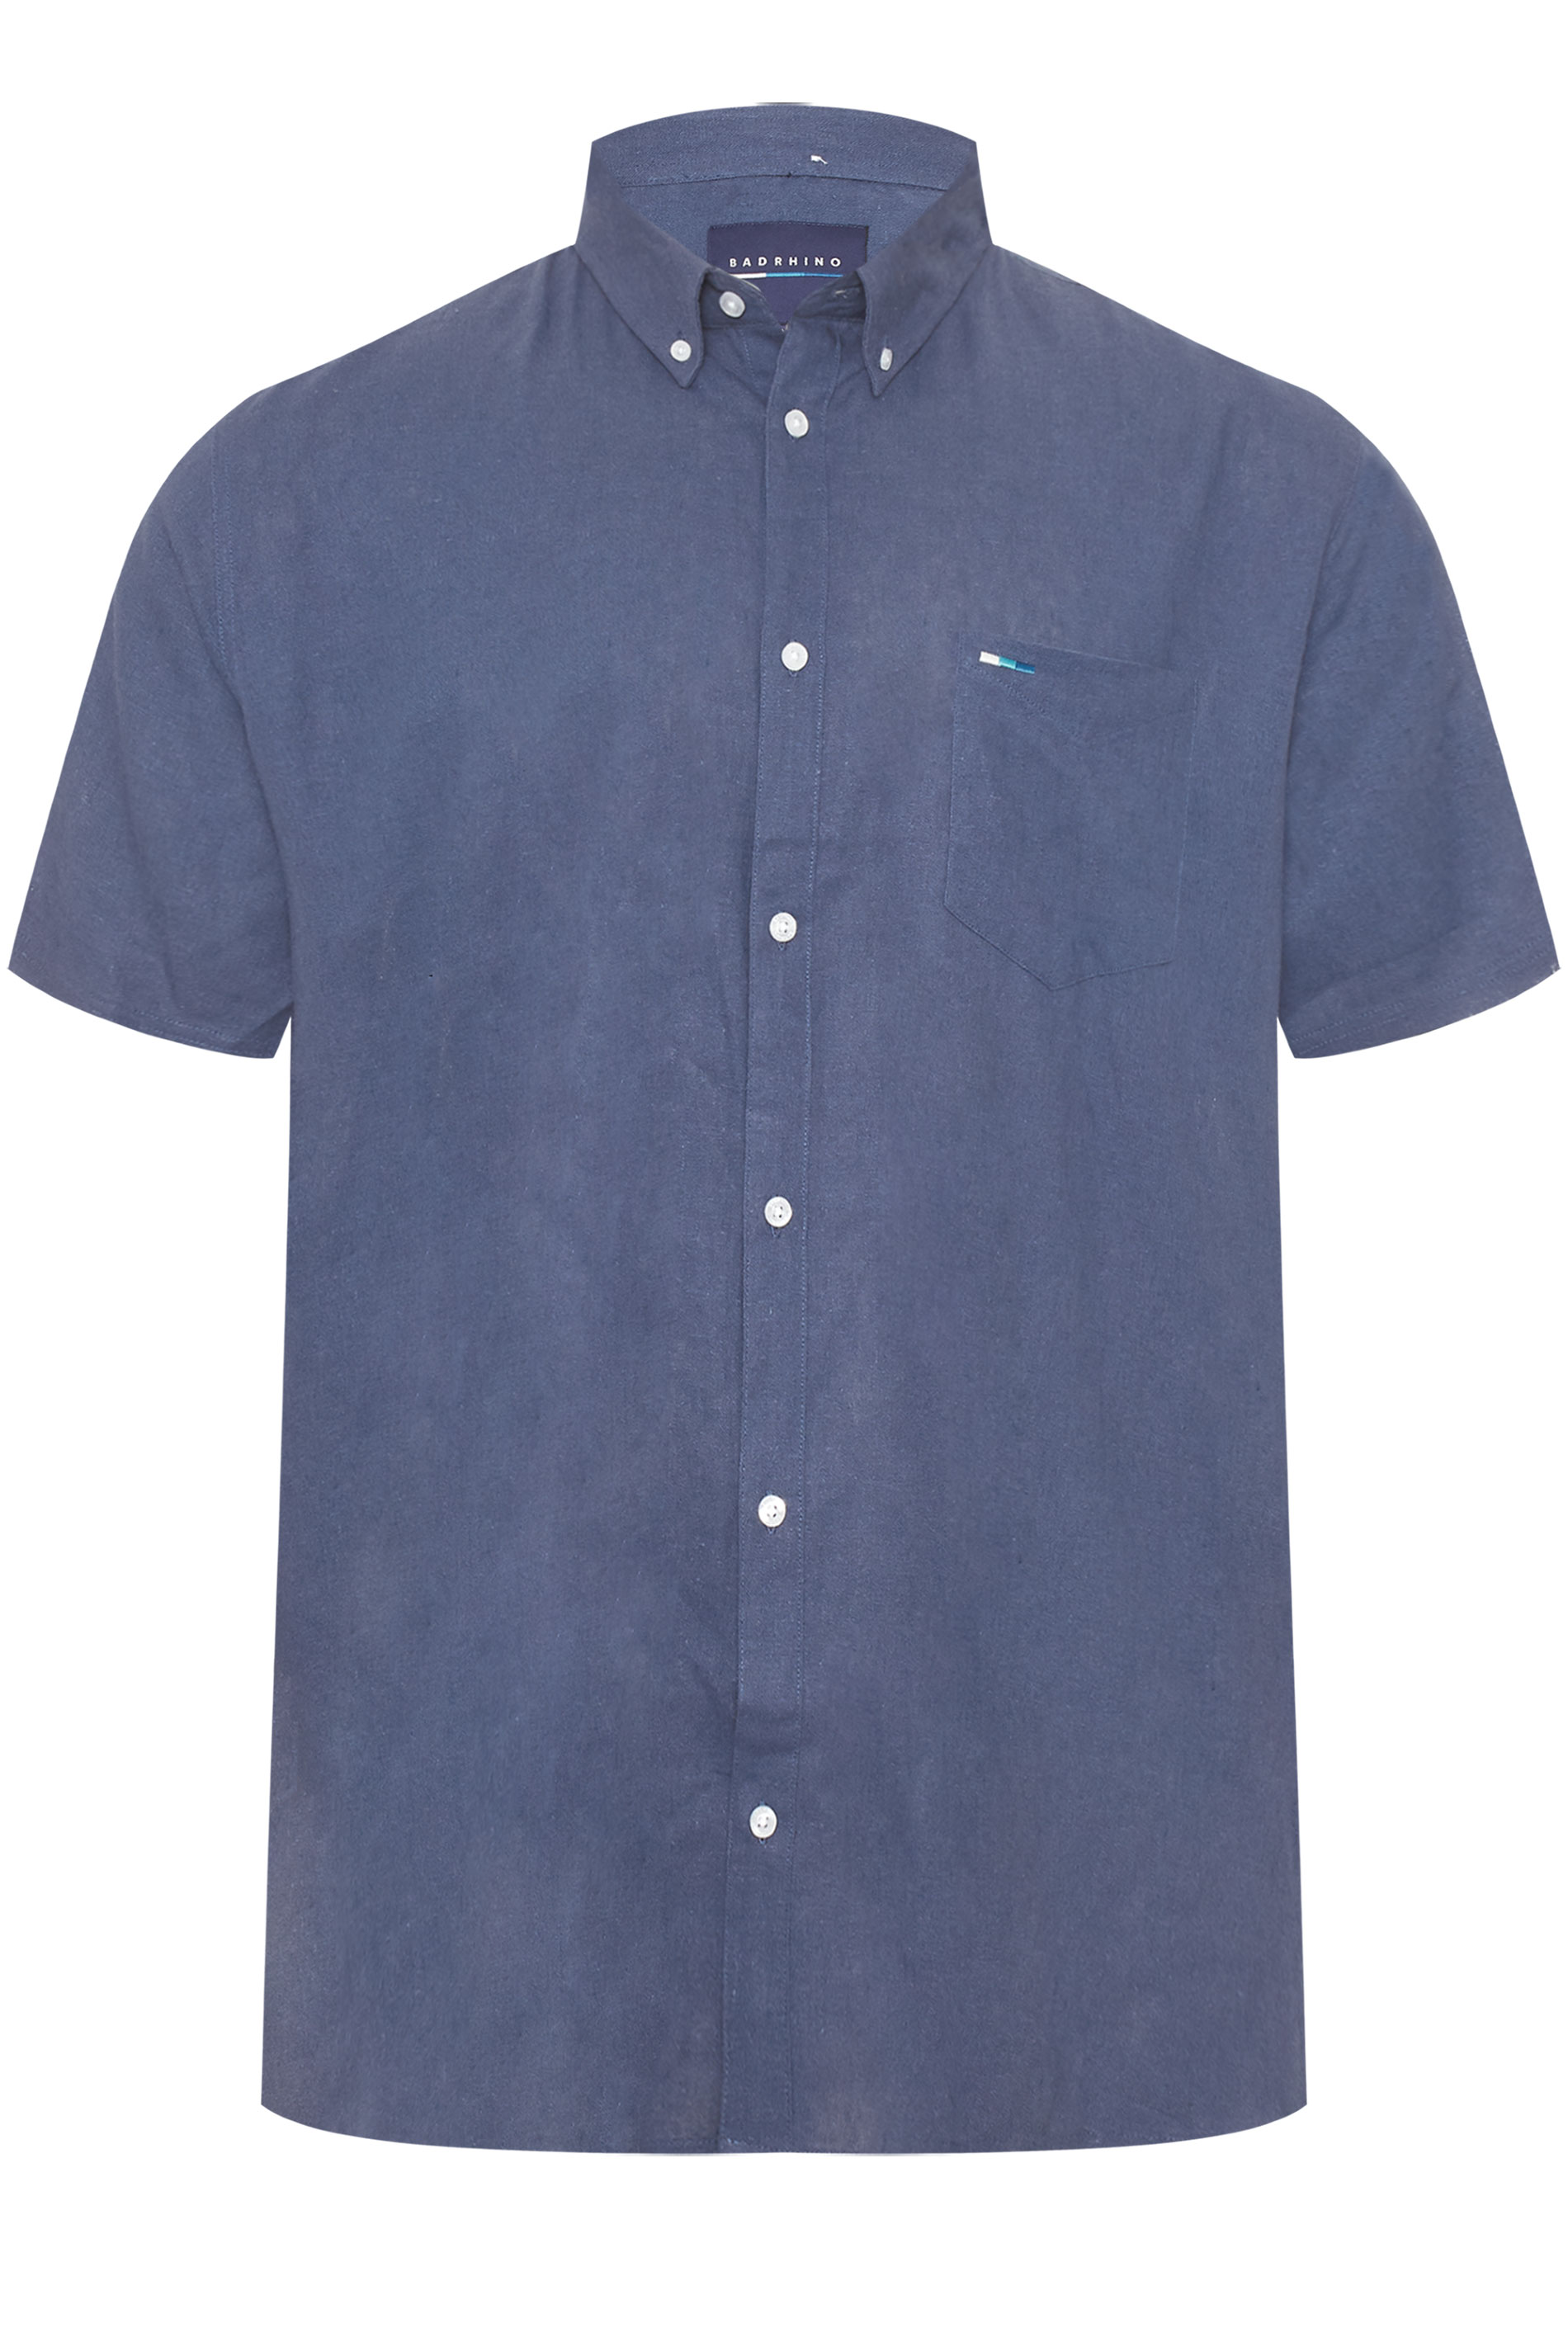 BadRhino Blue Linen Shirt_A.jpg